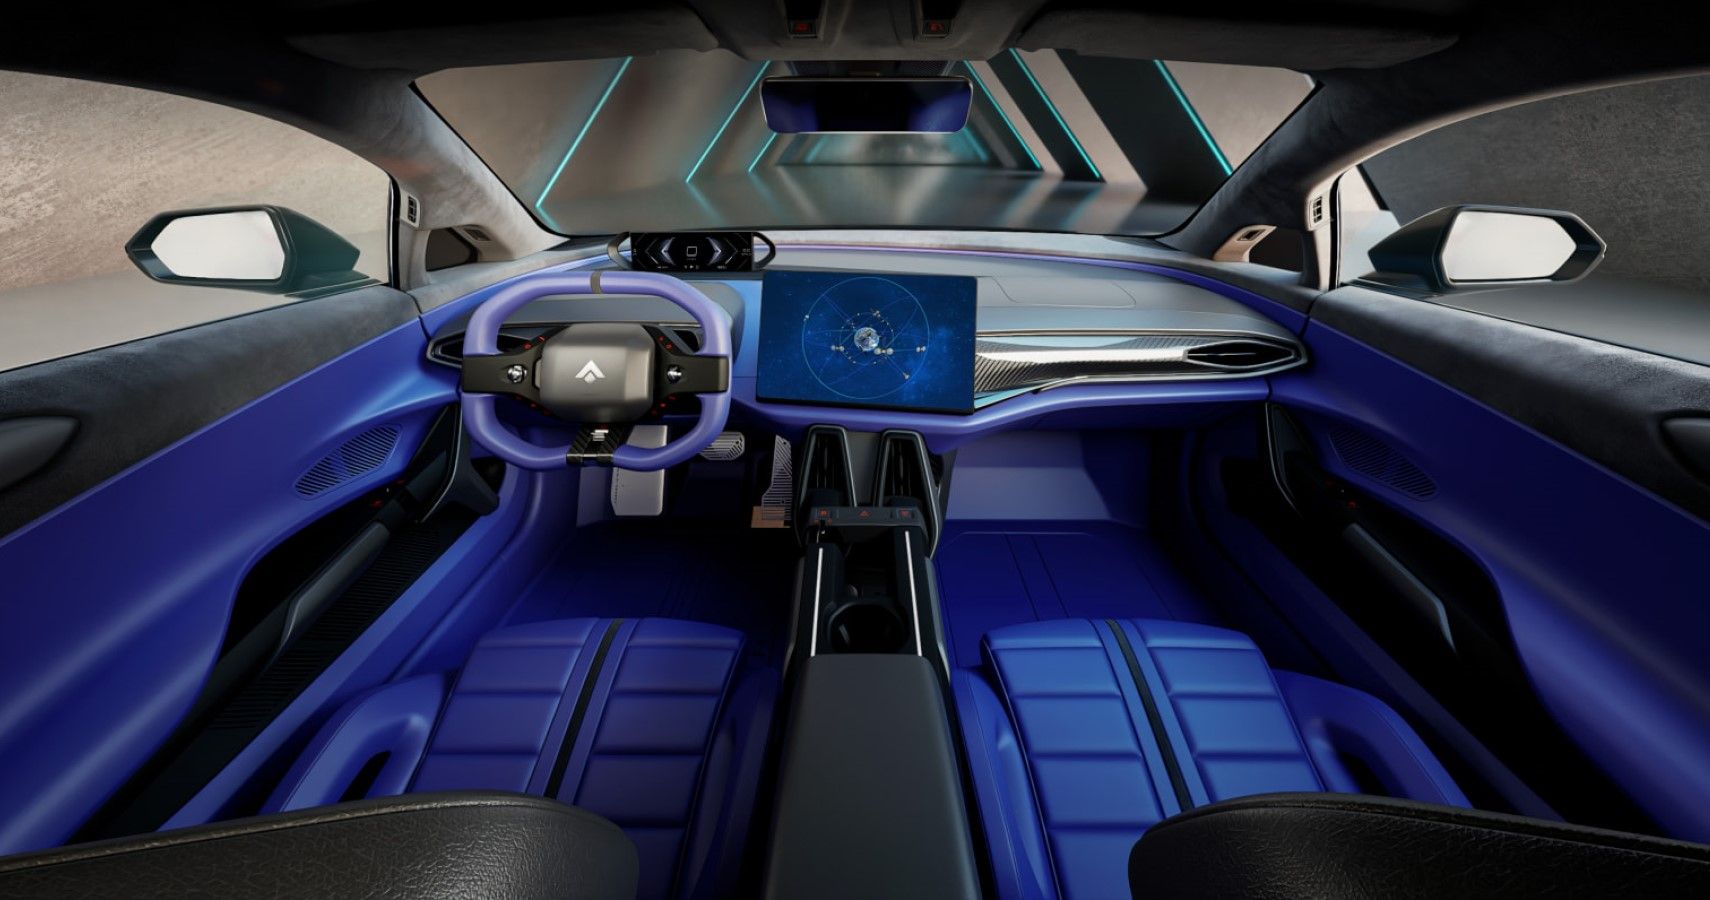 GAC Aion Hyper SSR electric supercar interior view